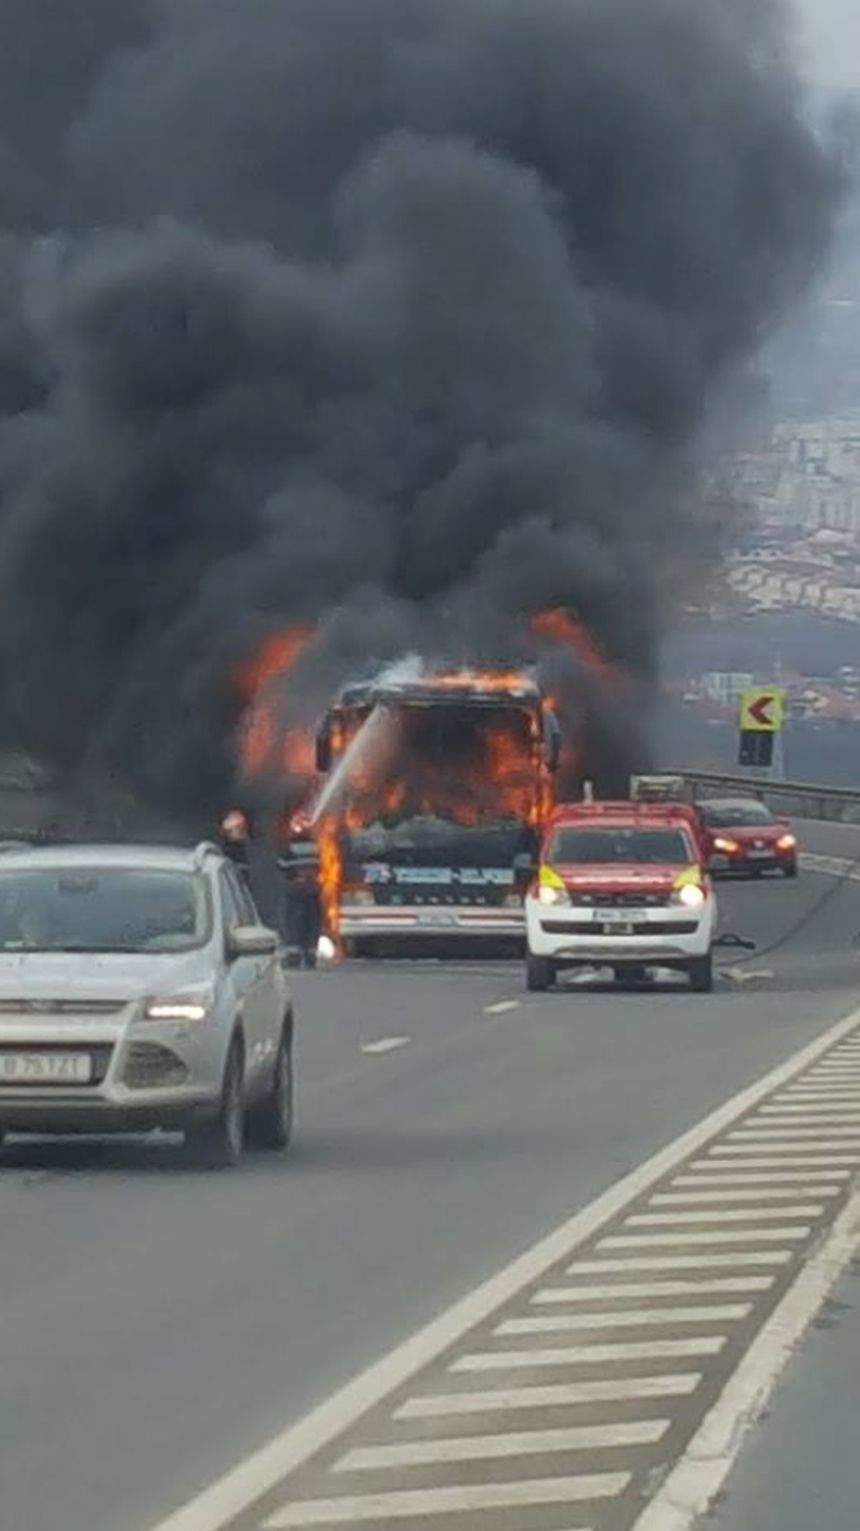 FOTO / Un autocar a luat foc pe o şosea din Cluj în urmă cu scurt timp. Imagini terifiante de la faţa locului